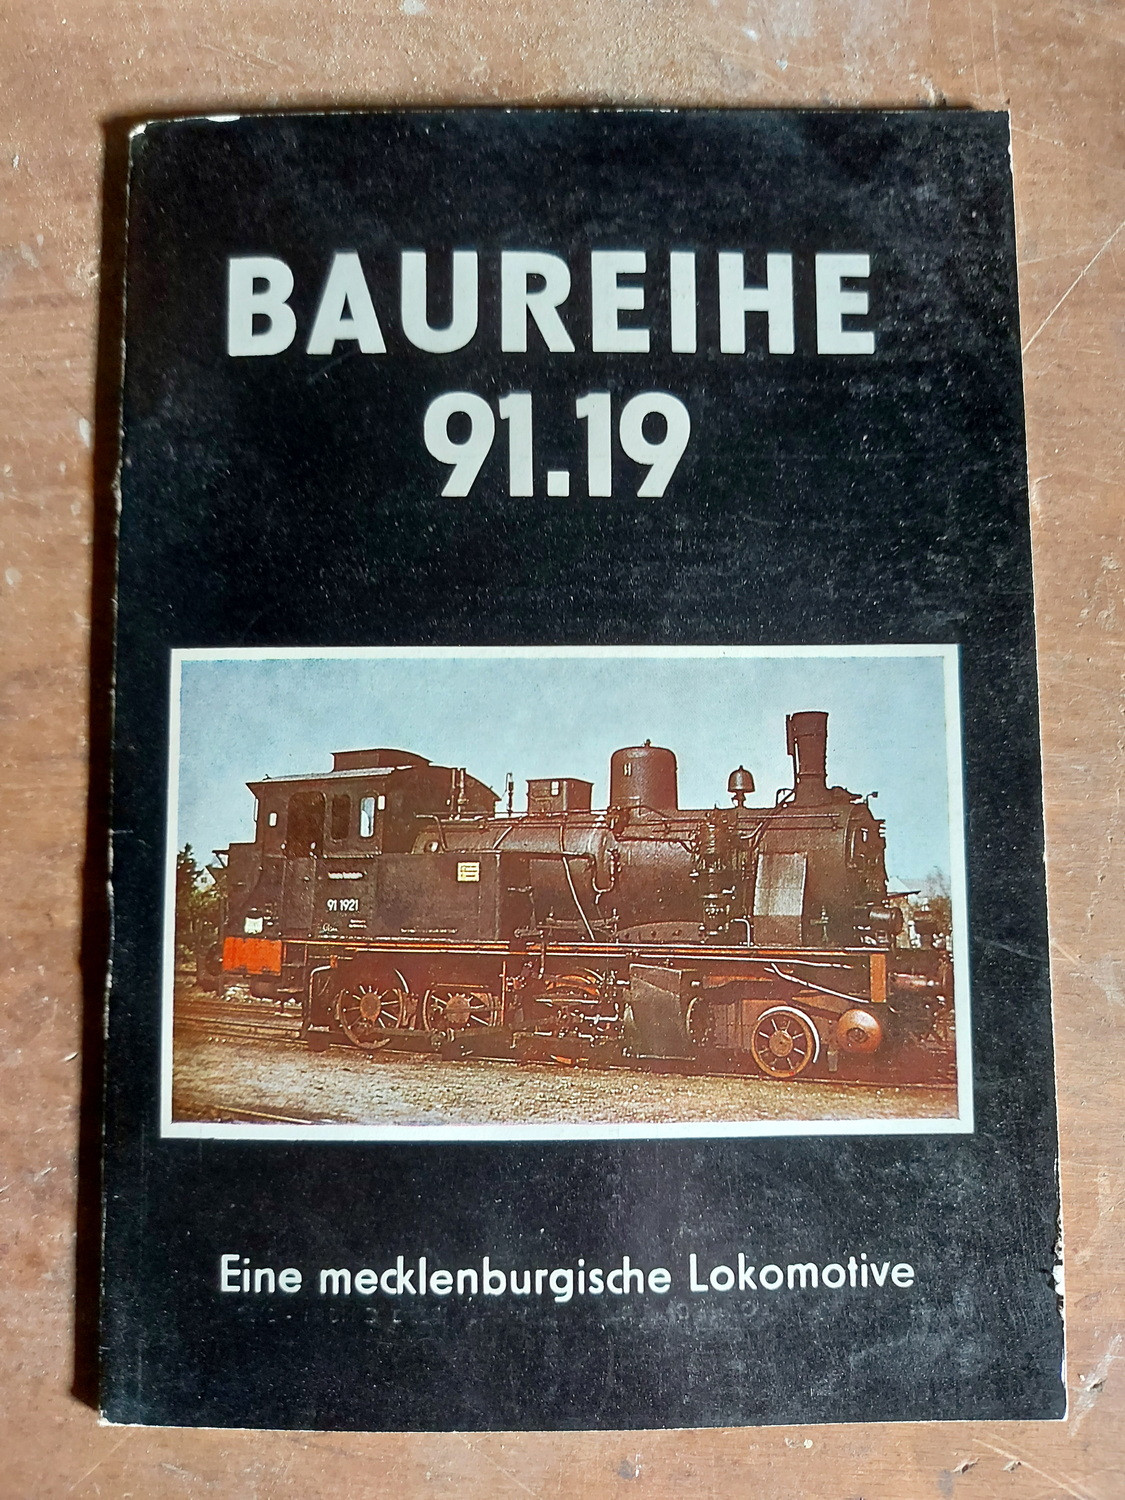 Baureihe 91.19 - Eine mecklenburgische Lokomotive